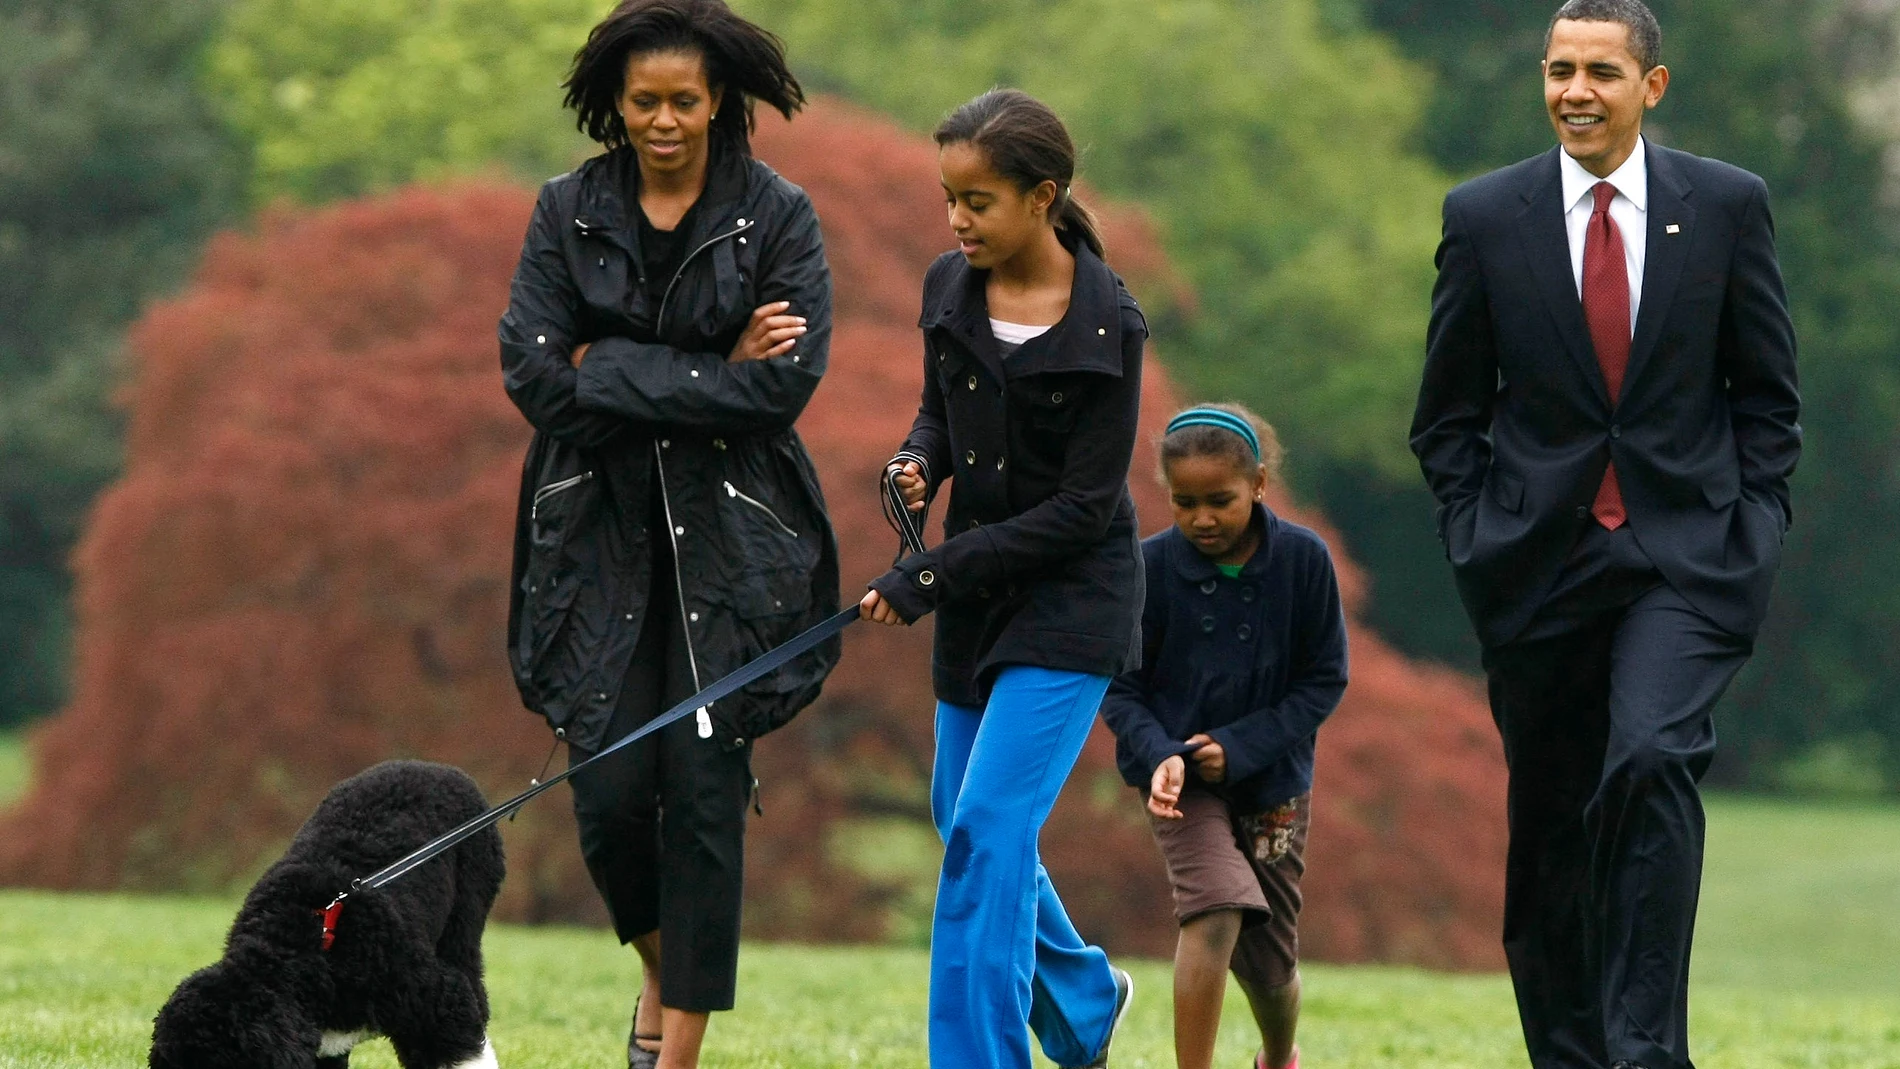 La familia Obama con su perro.